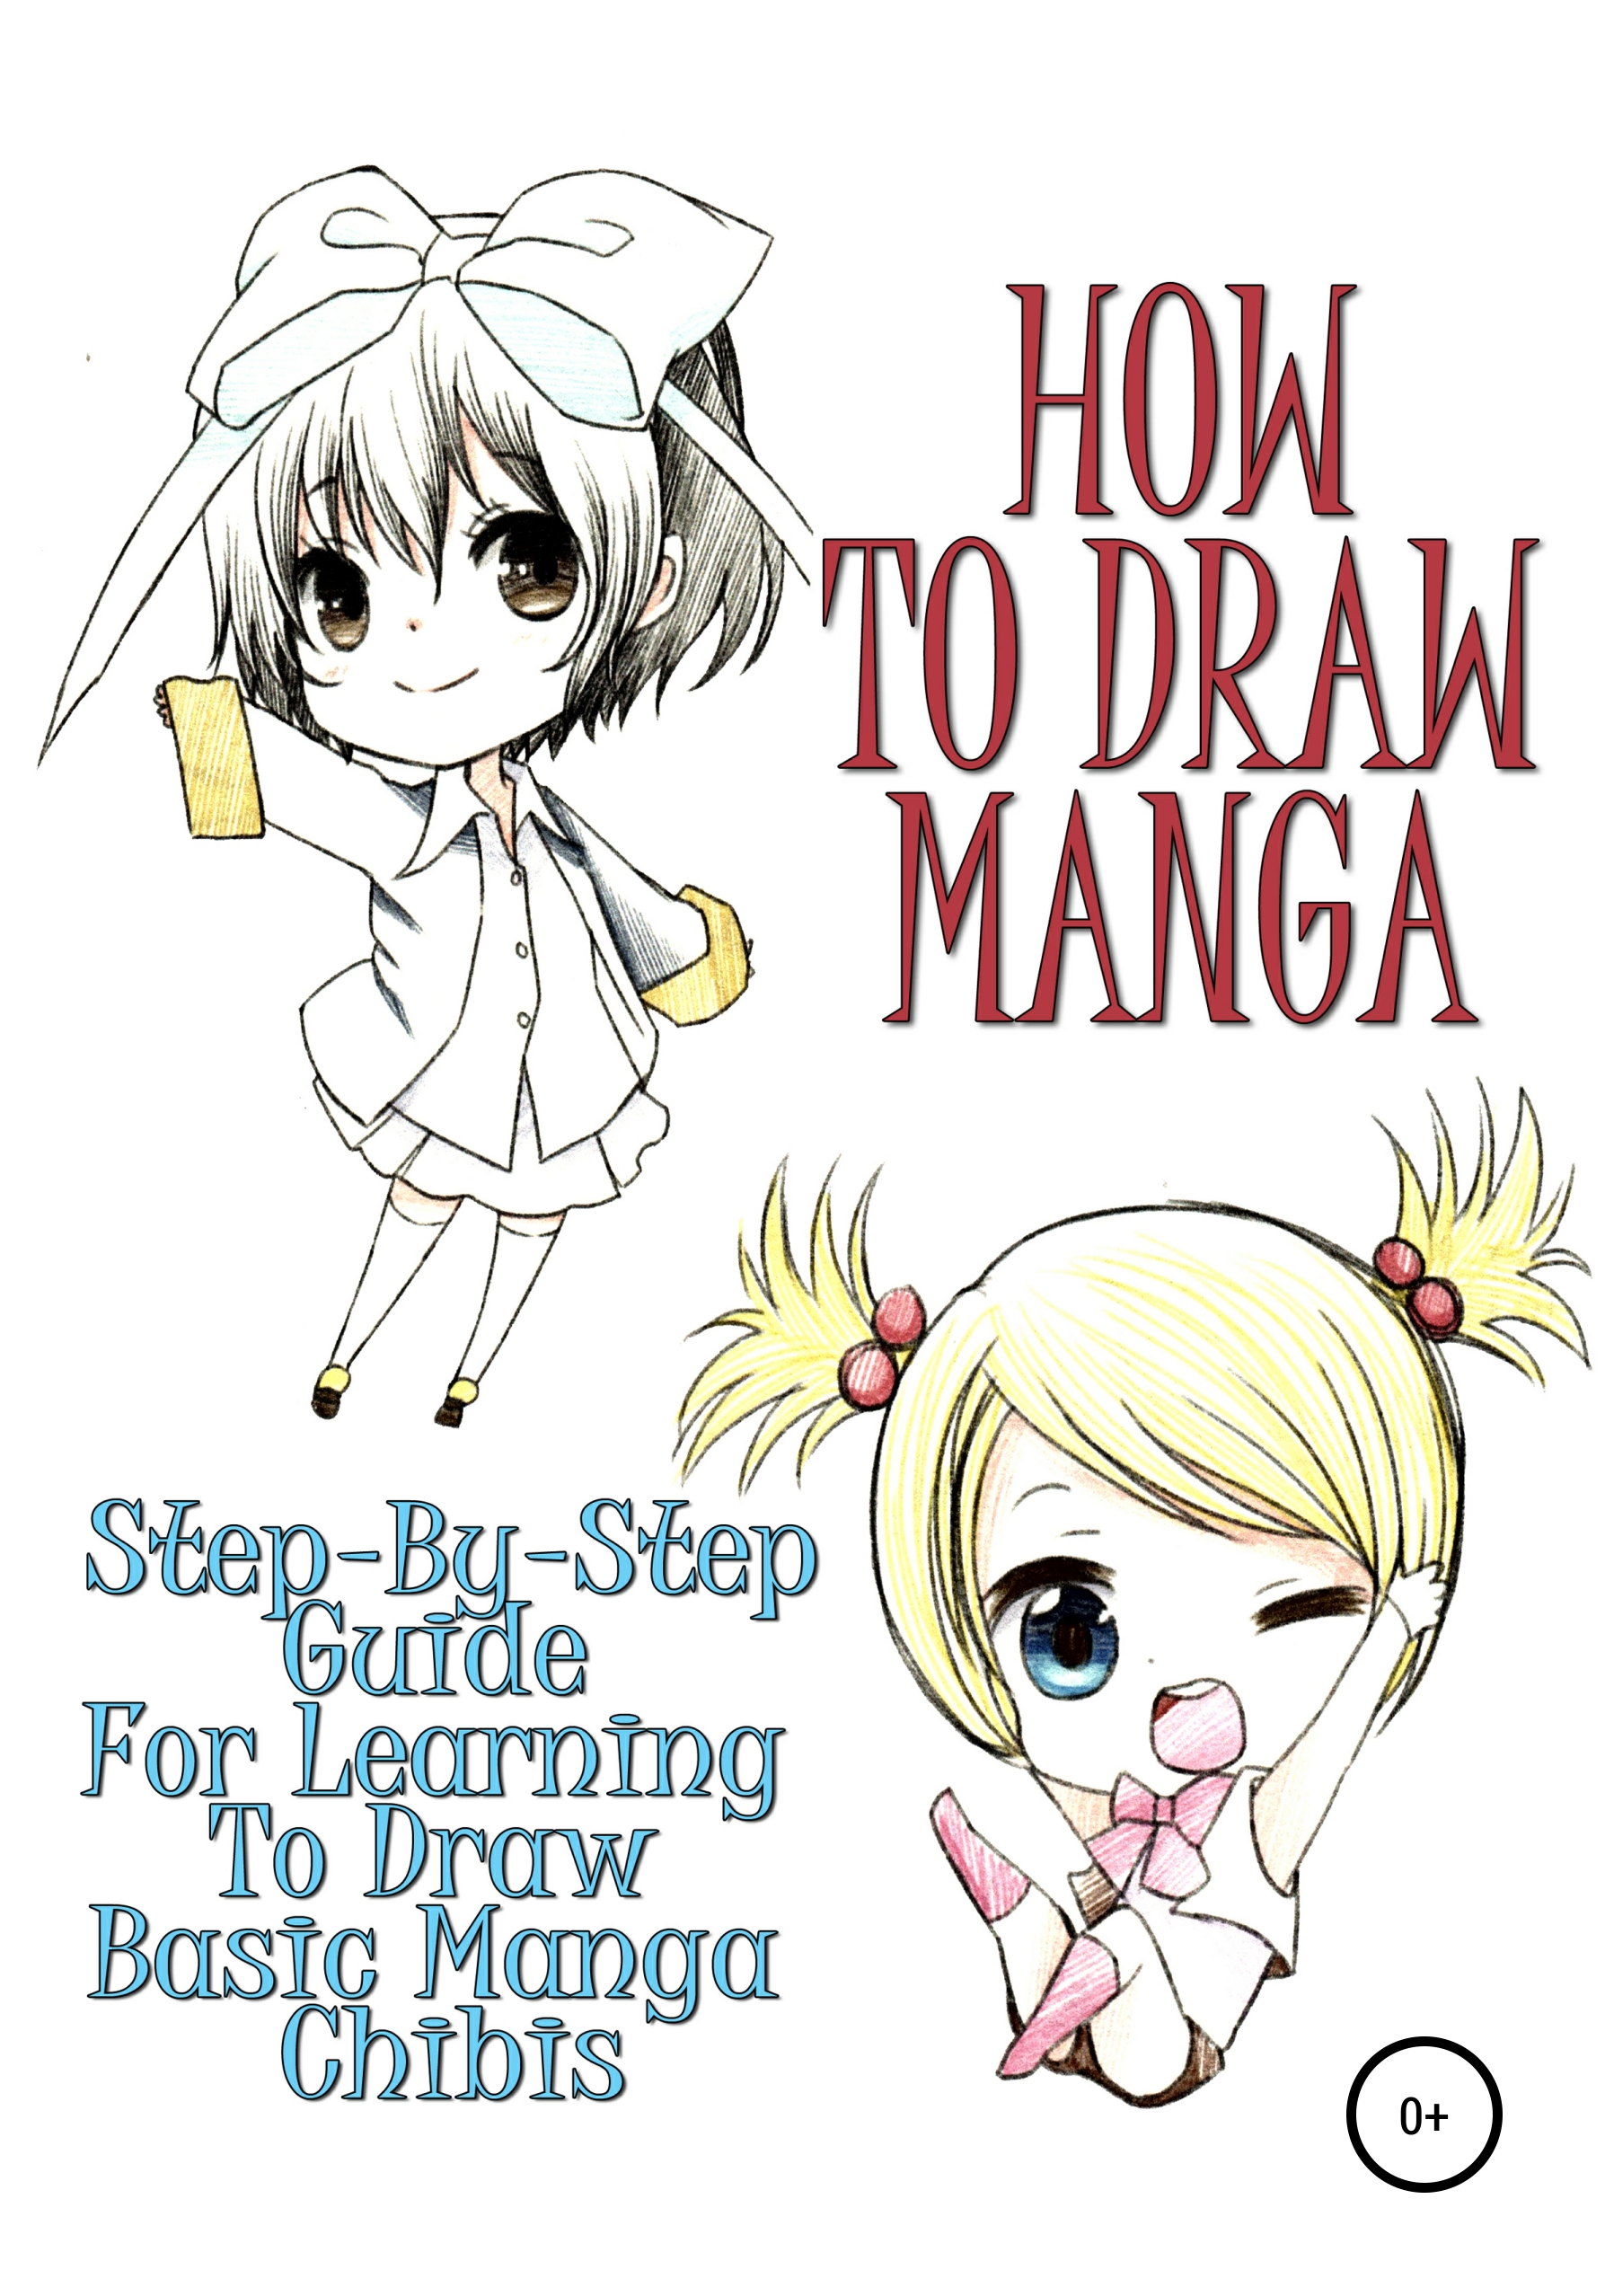 Читать онлайн How To Draw Manga Step By Step Guide For Learning To Draw Basic Manga Chibis 